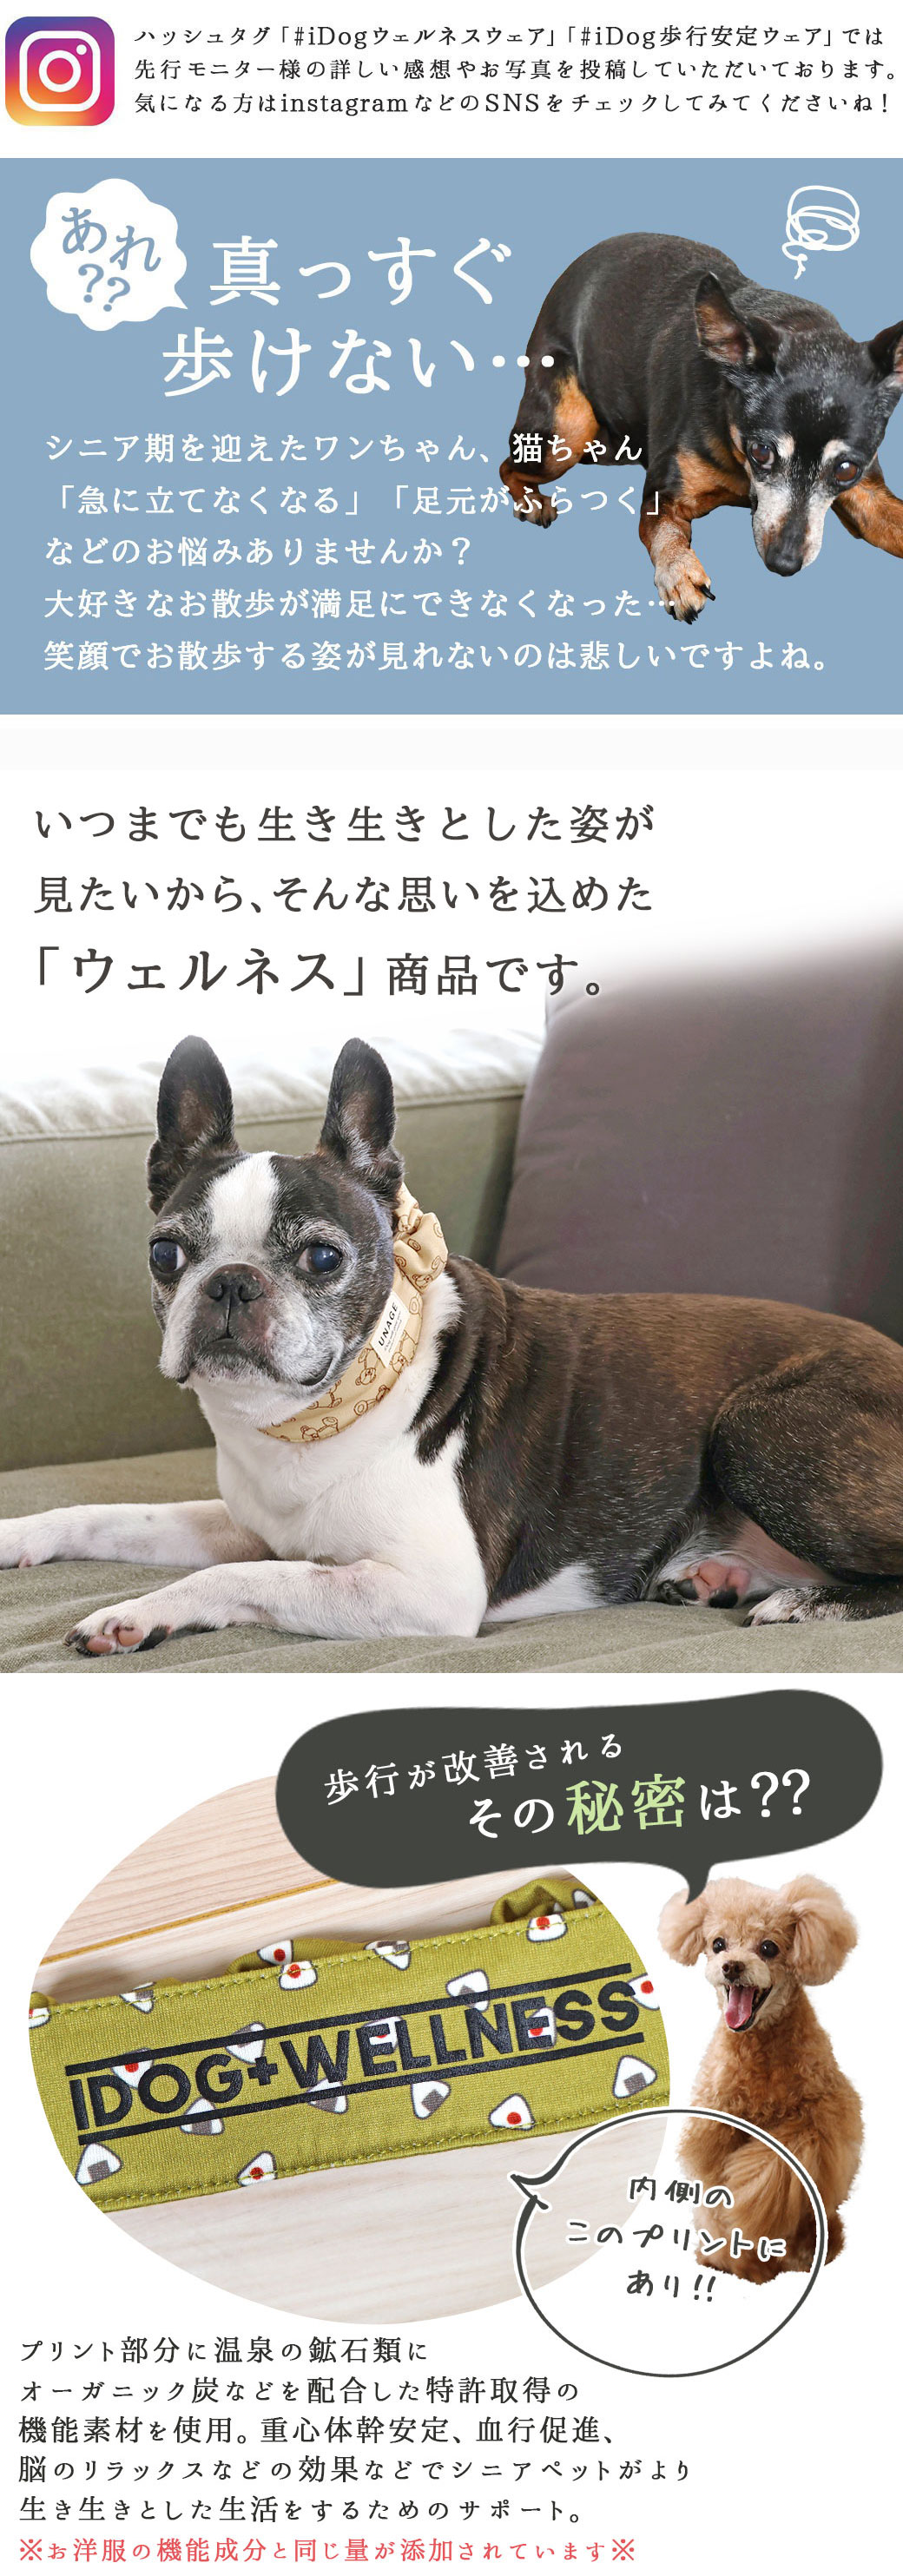 IDOGICAT リボン反射シュシュ S・Mサイズ （オレンジ・イエロー・グレー）犬 首輪 お散歩 反射素材 安全 日本製